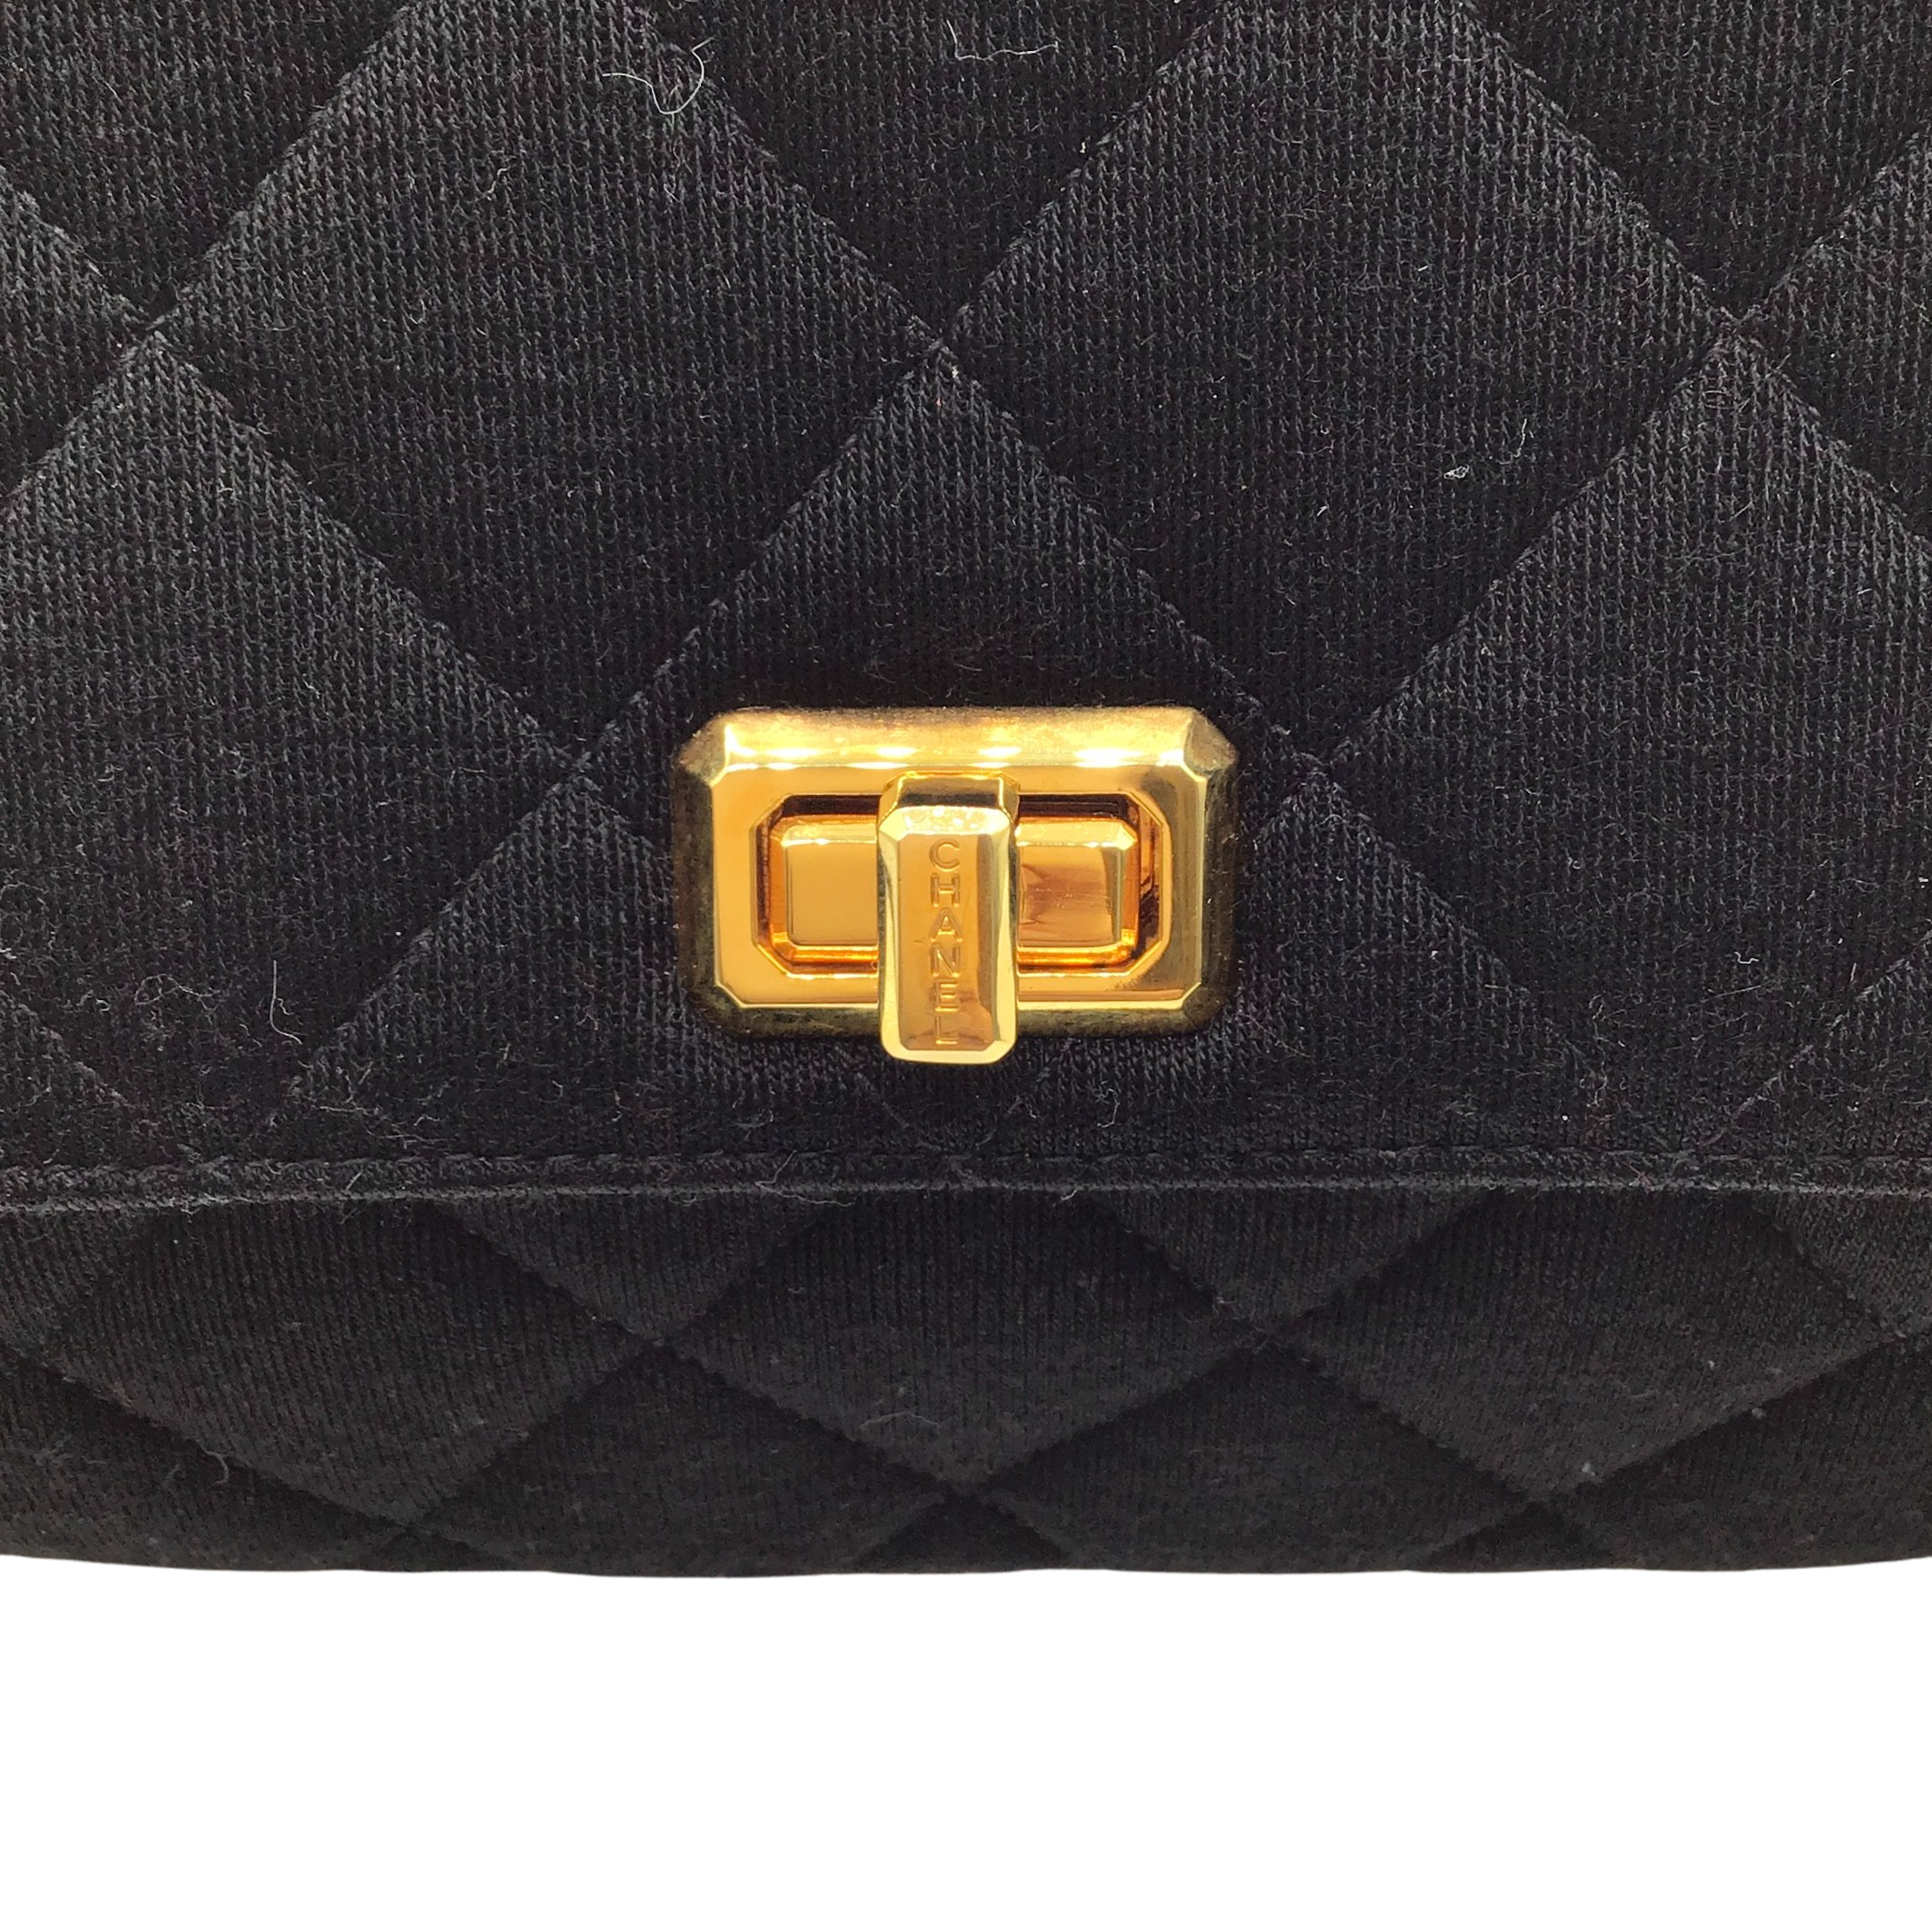 Chanel Mademoiselle 1995 Black Shoulder Bag